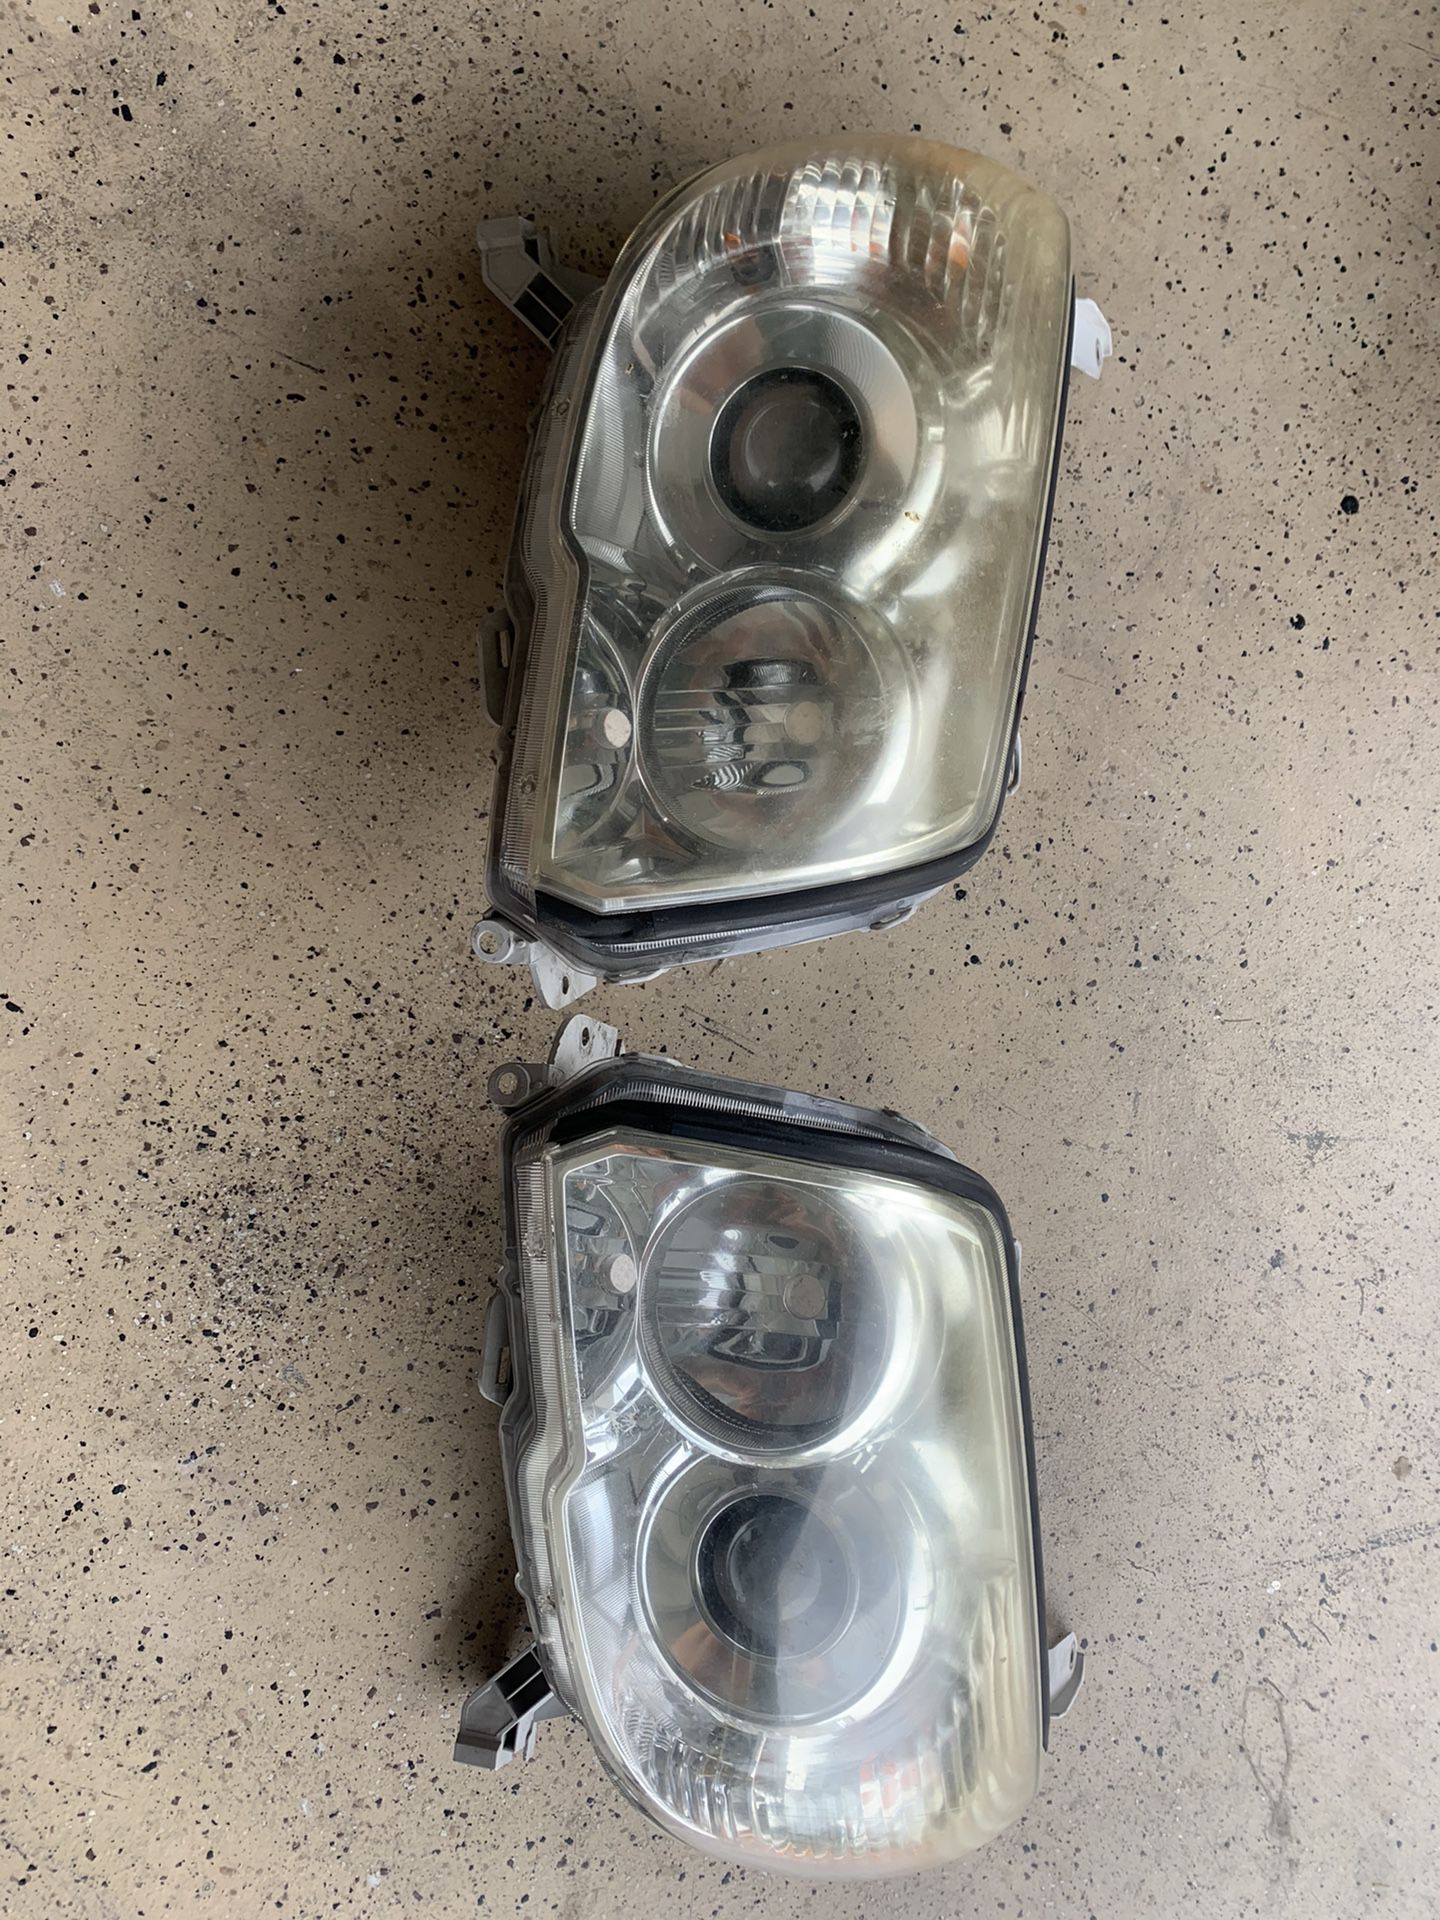 4th generation 4Runner headlights